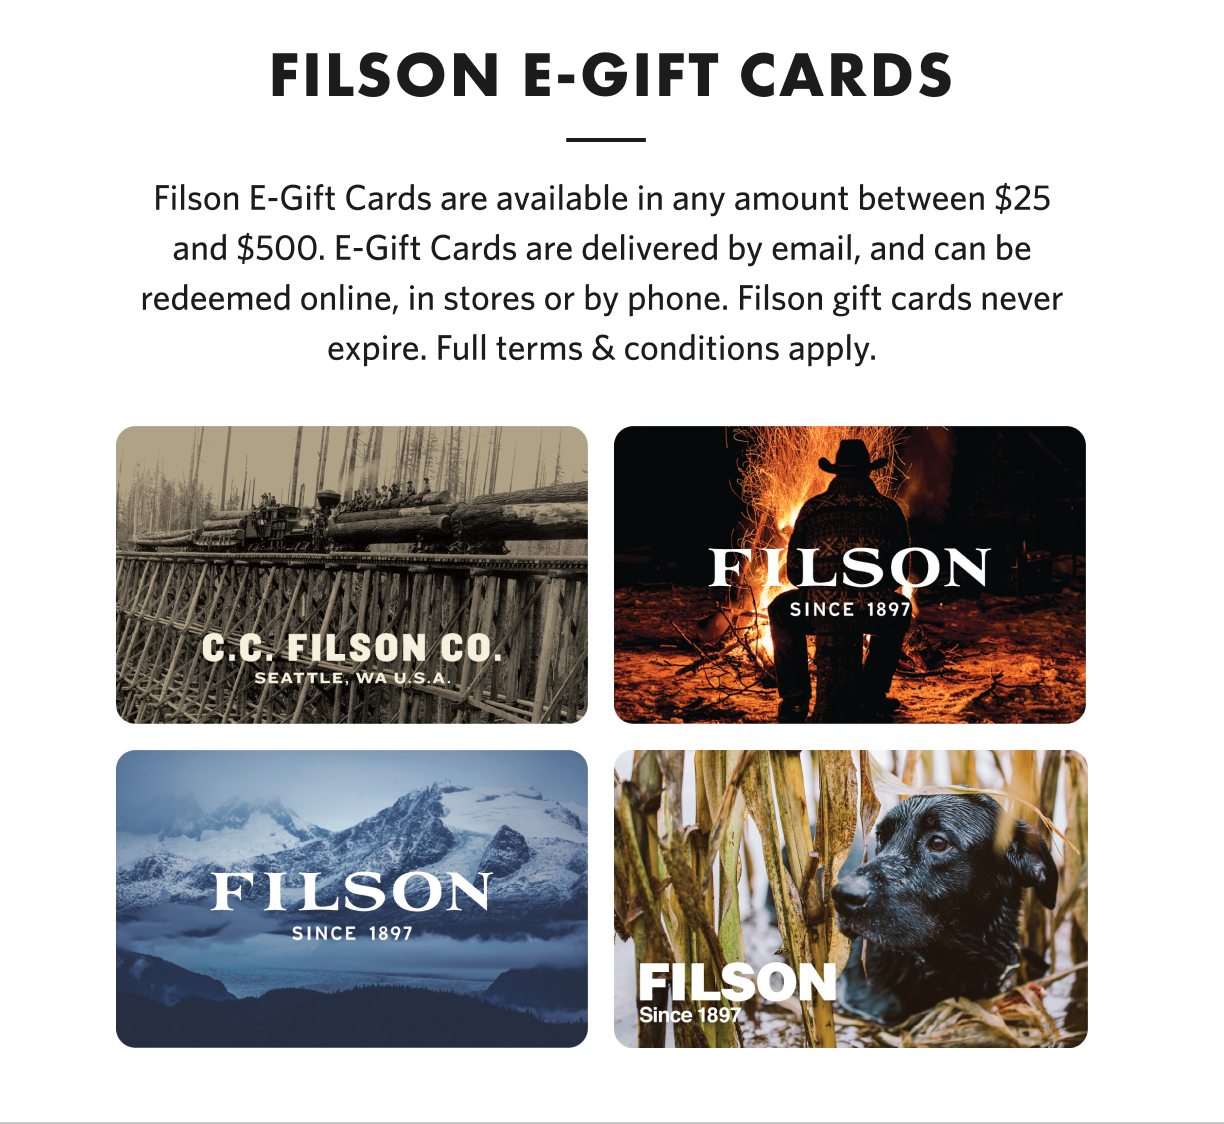 SHOP E-GIFT CARDS